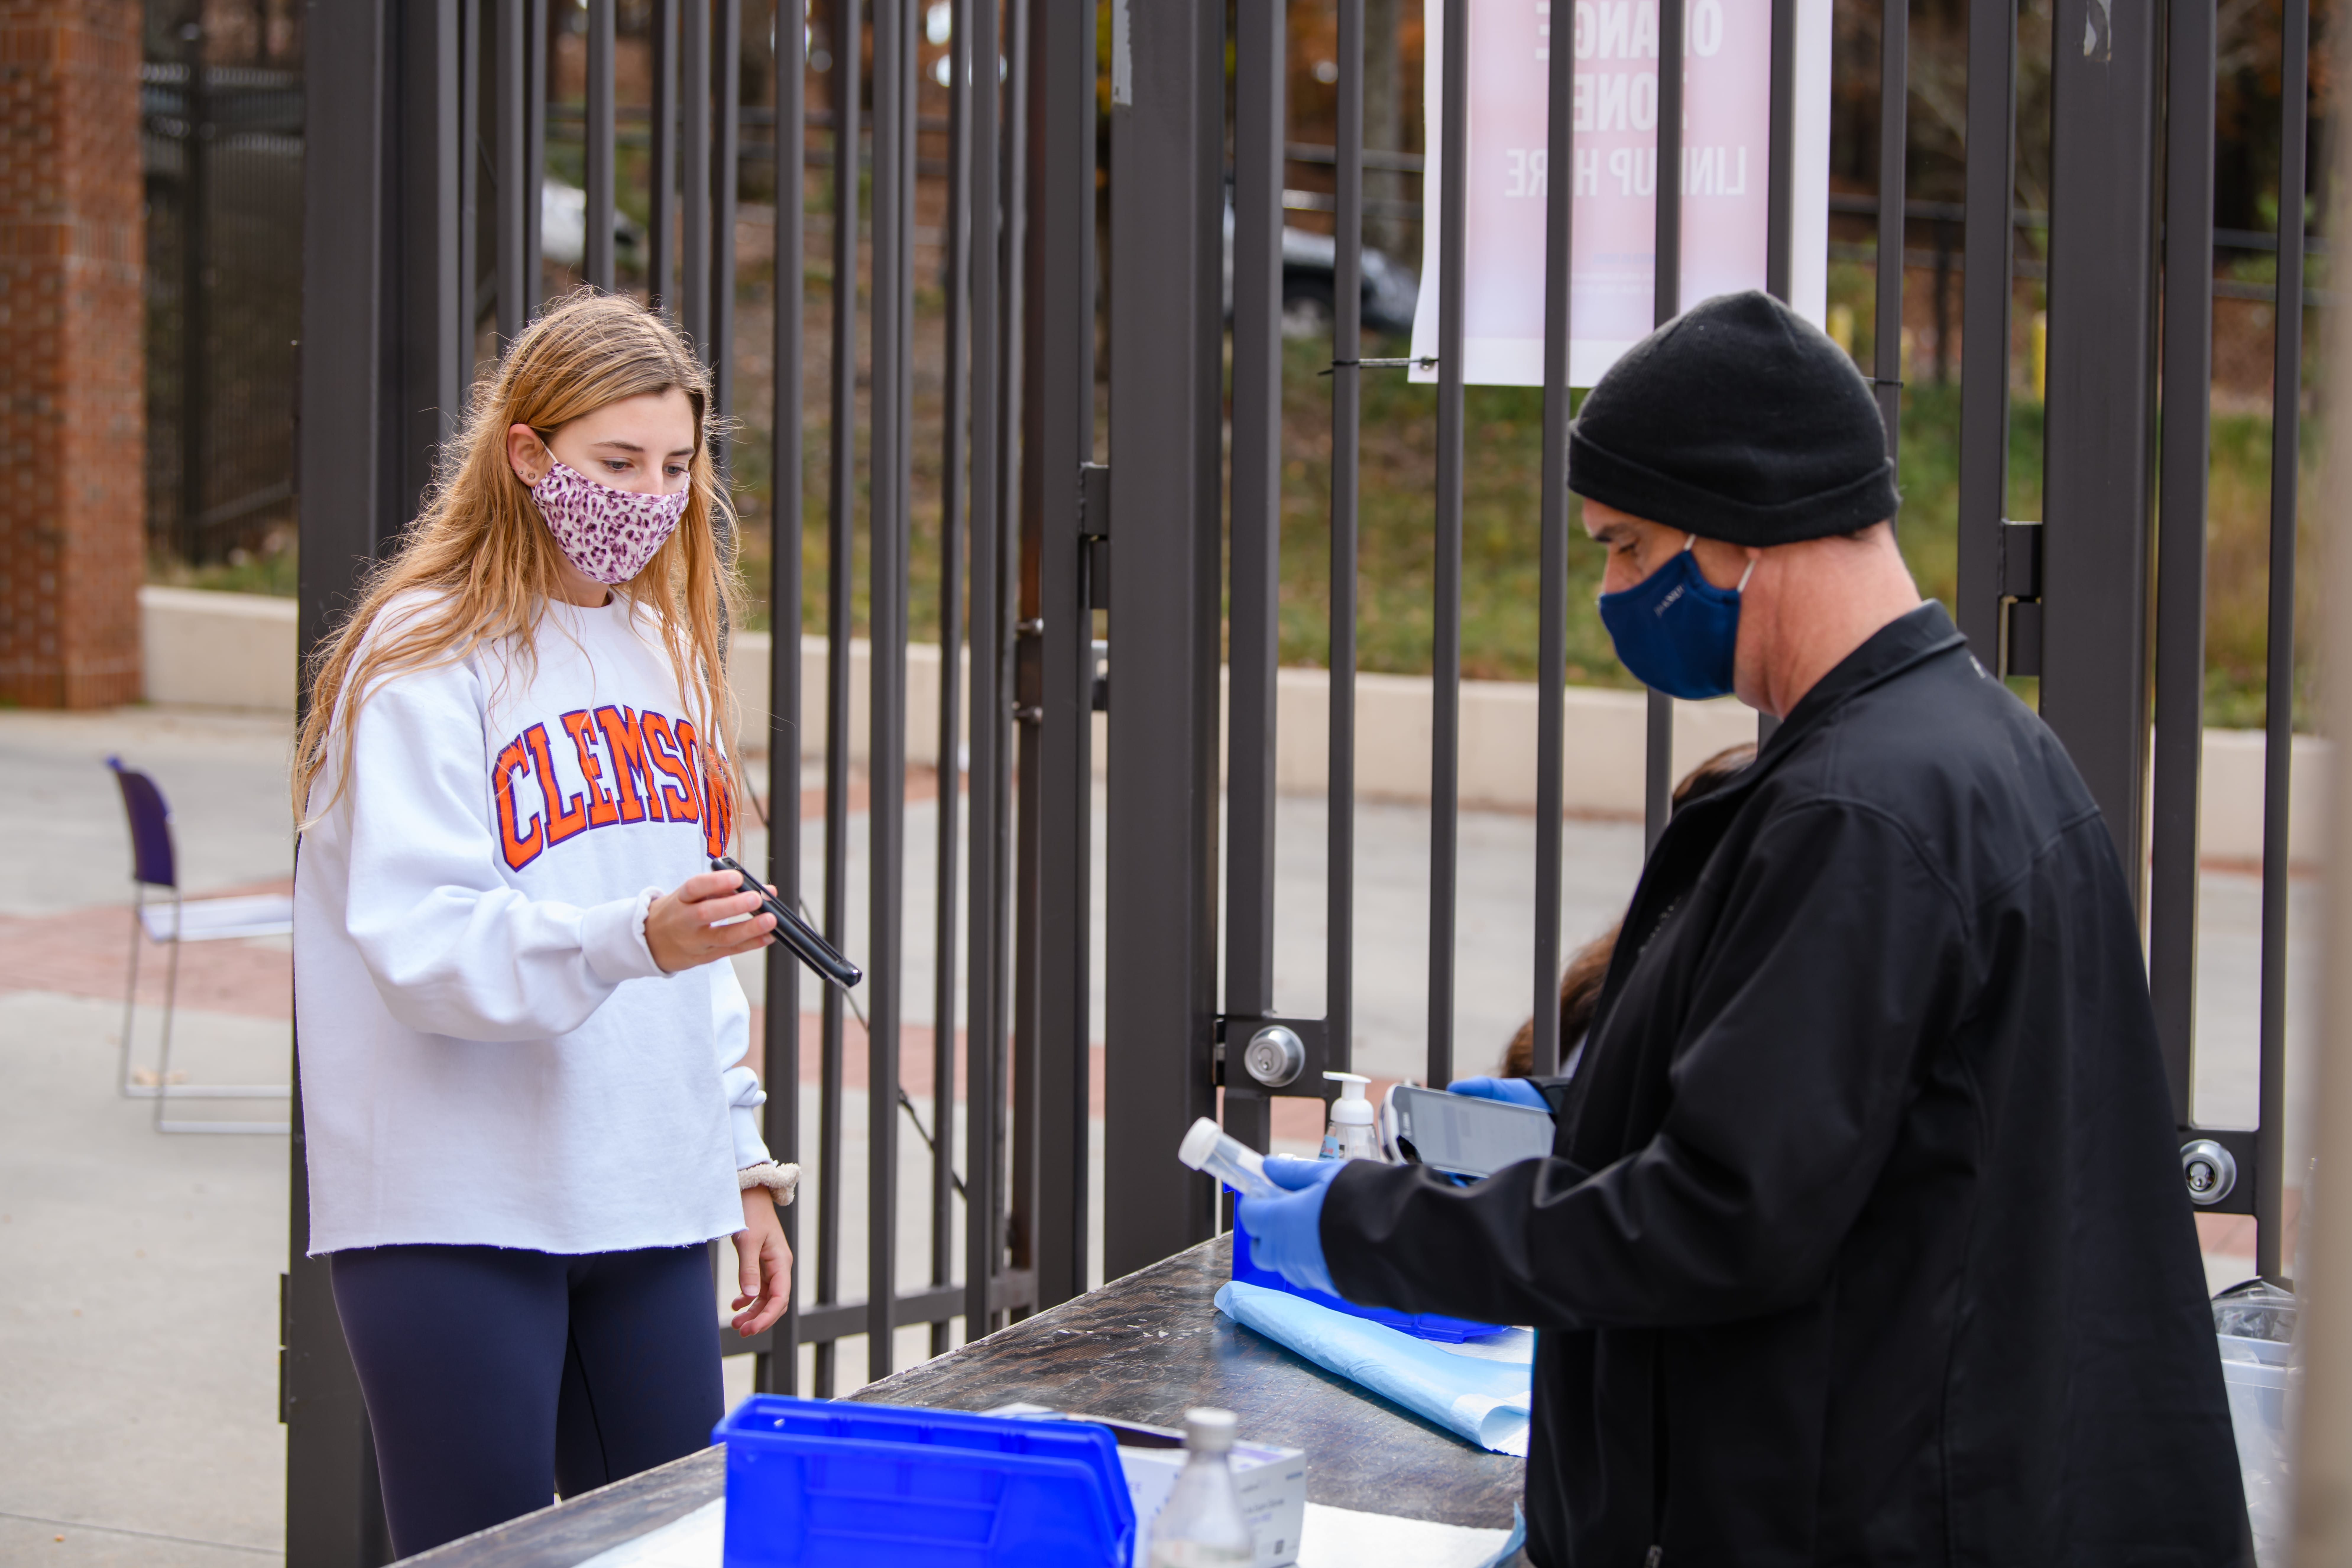 A student participates in COVID-19 testing at Memorial Stadium